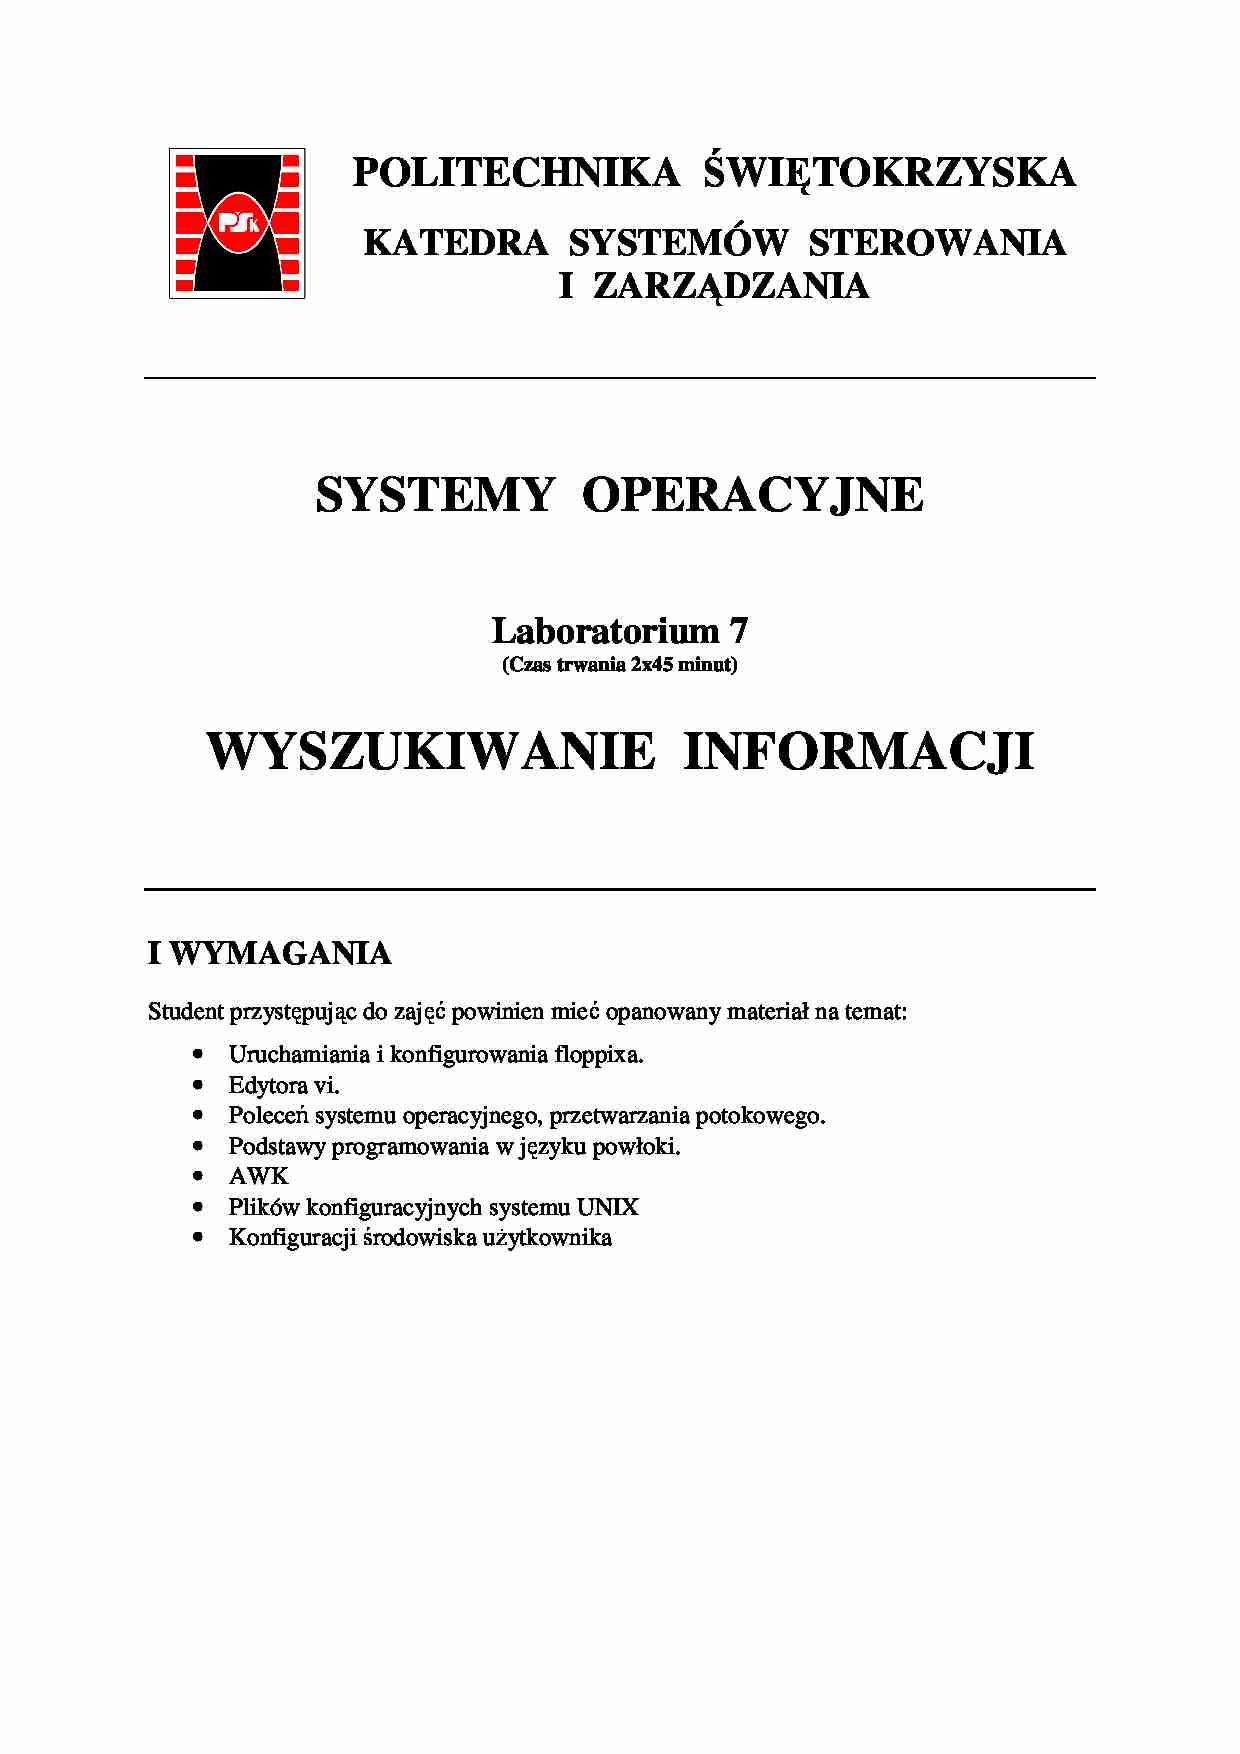 Systemy operacyjne, środowisko użytkownika - strona 1